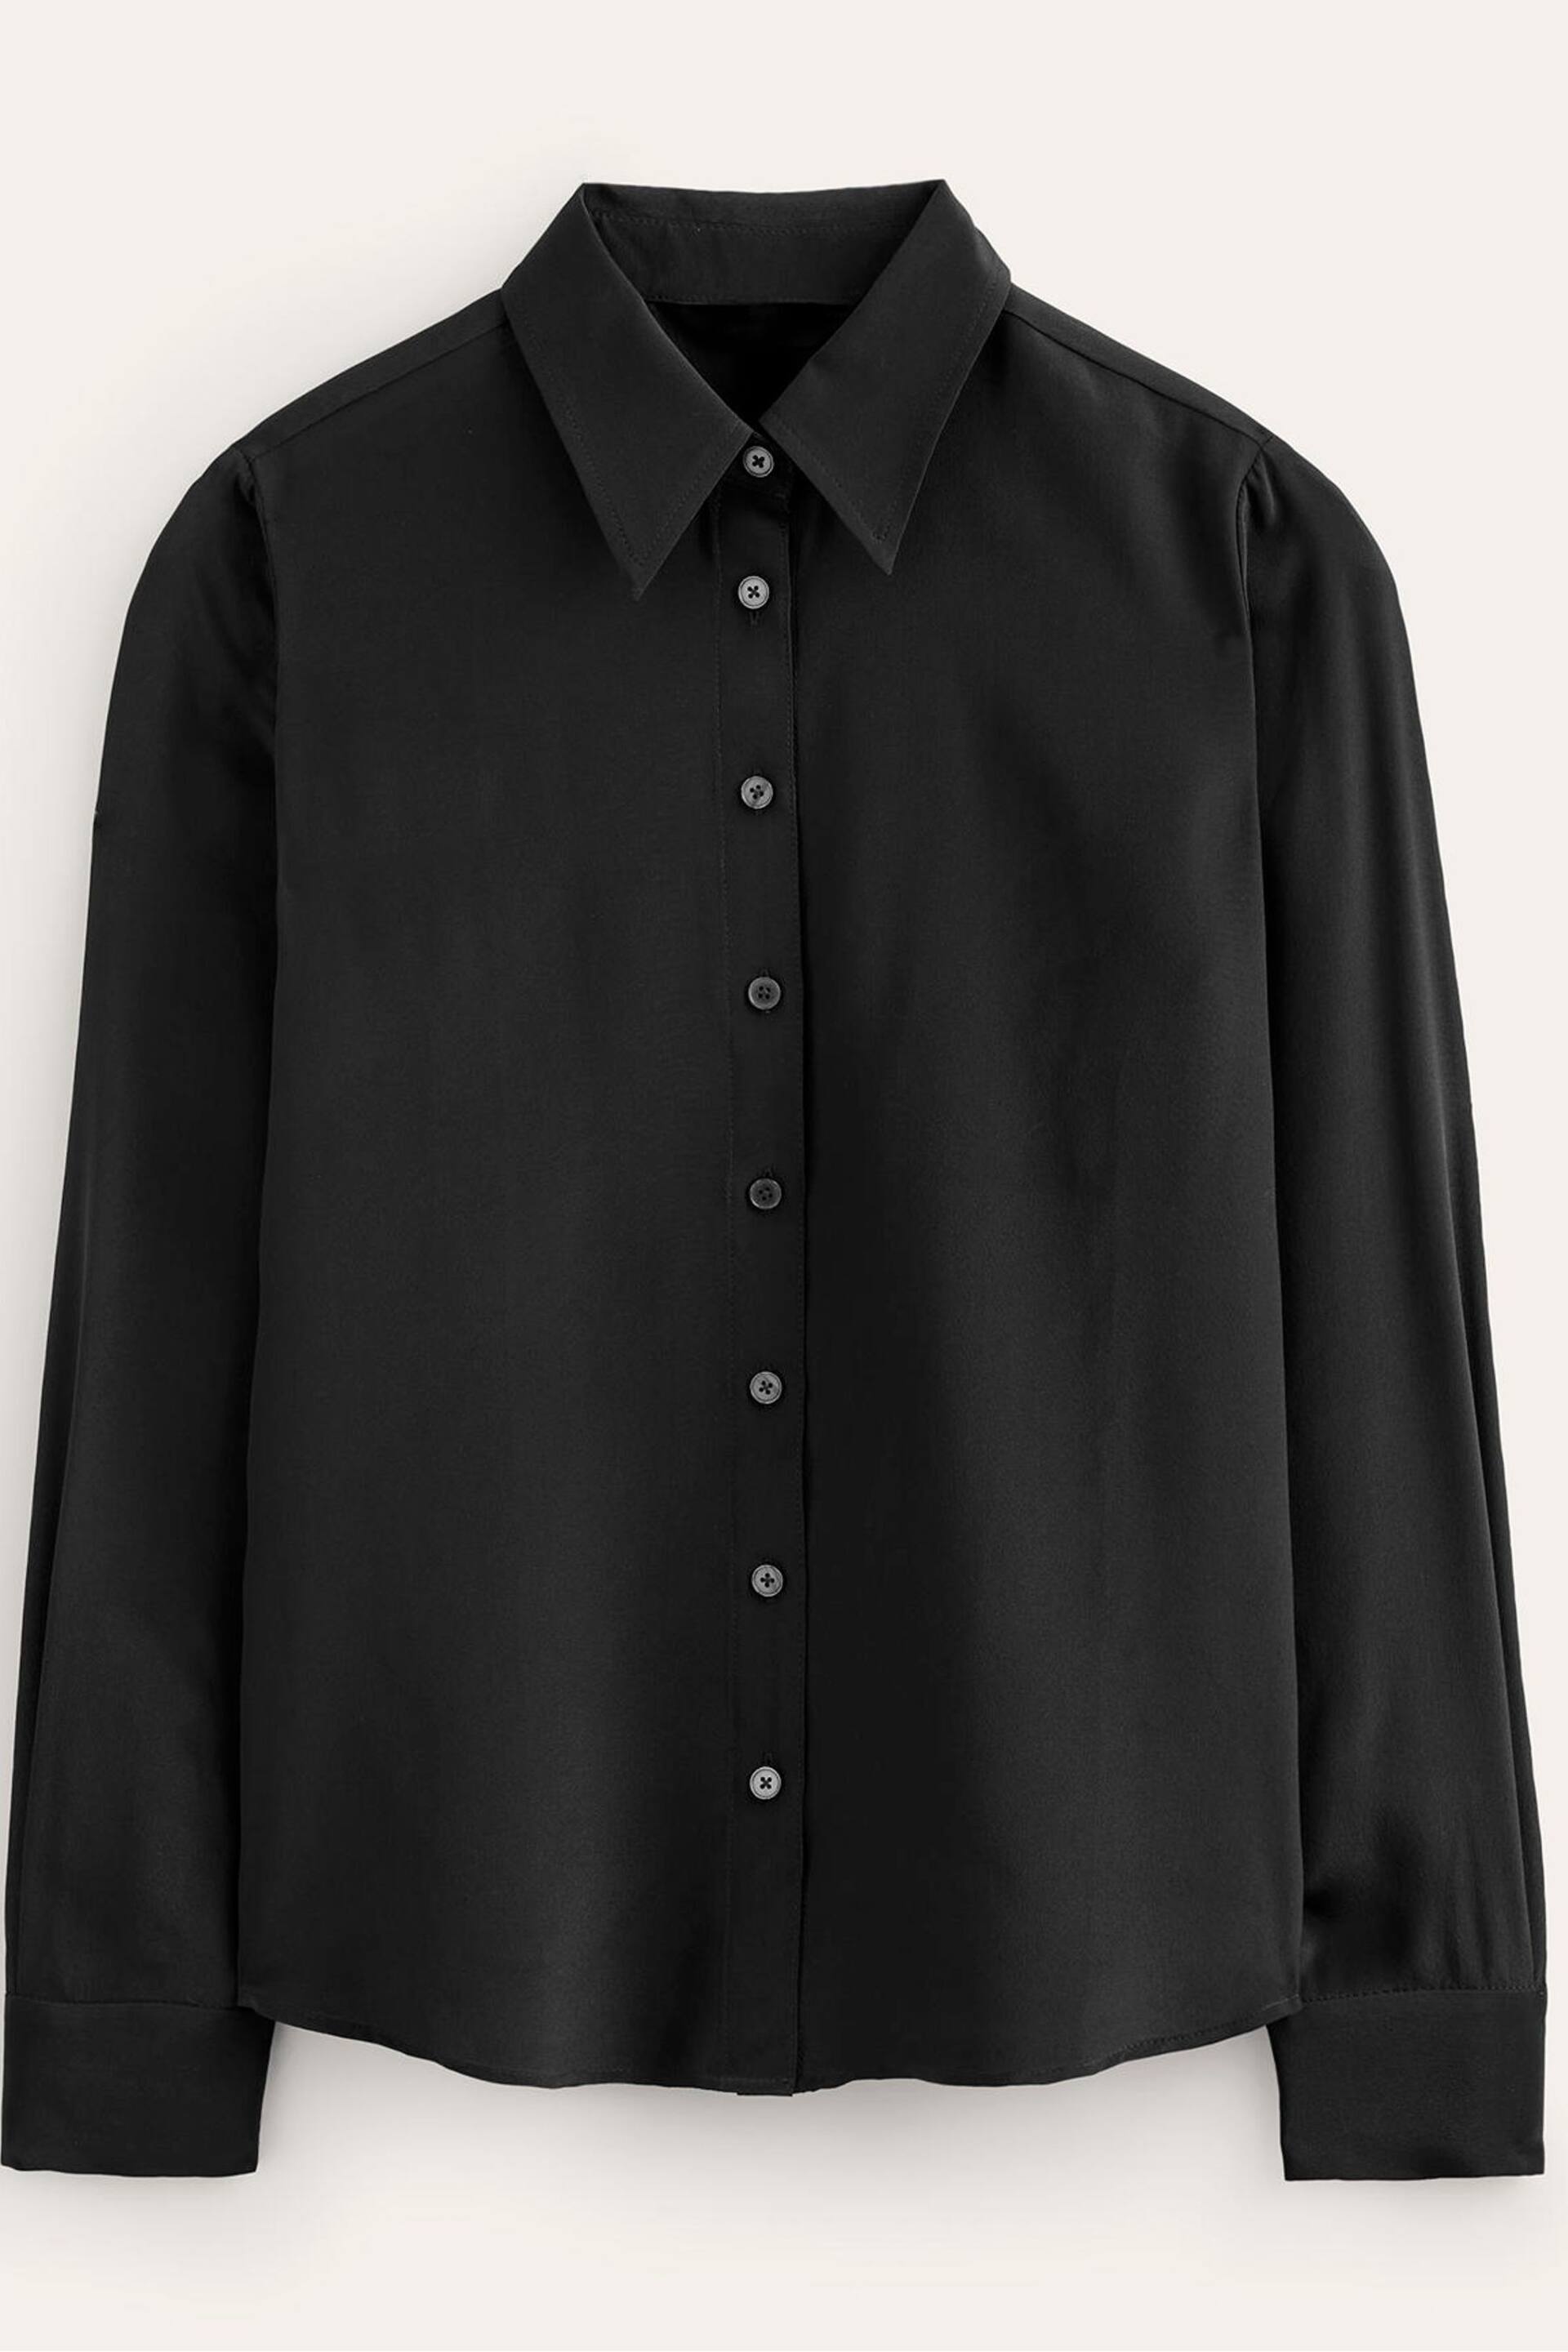 Boden Black Sienna Silk Shirt - Image 5 of 5